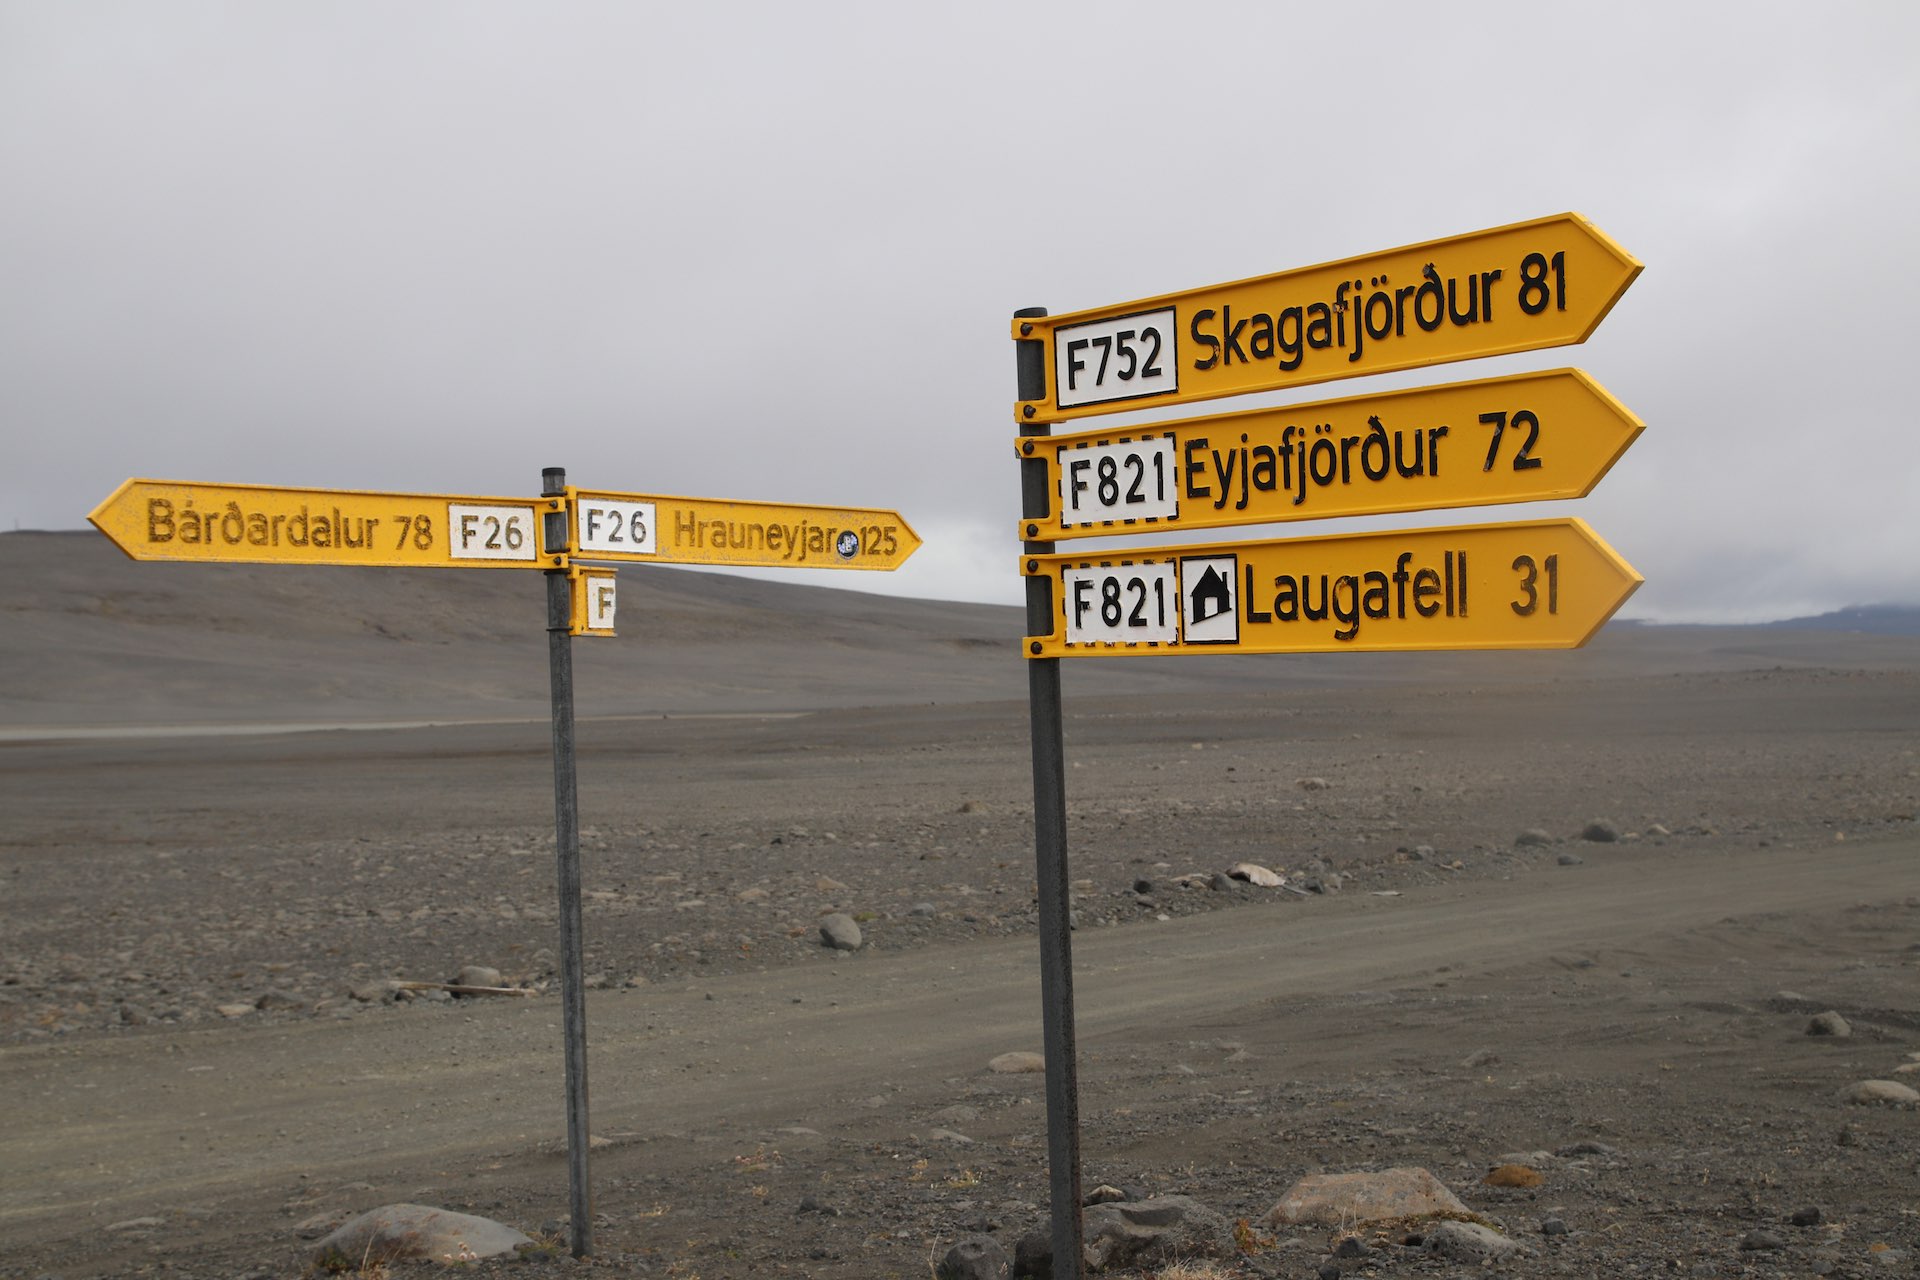 Drogowskazy na Islandii - droga F26